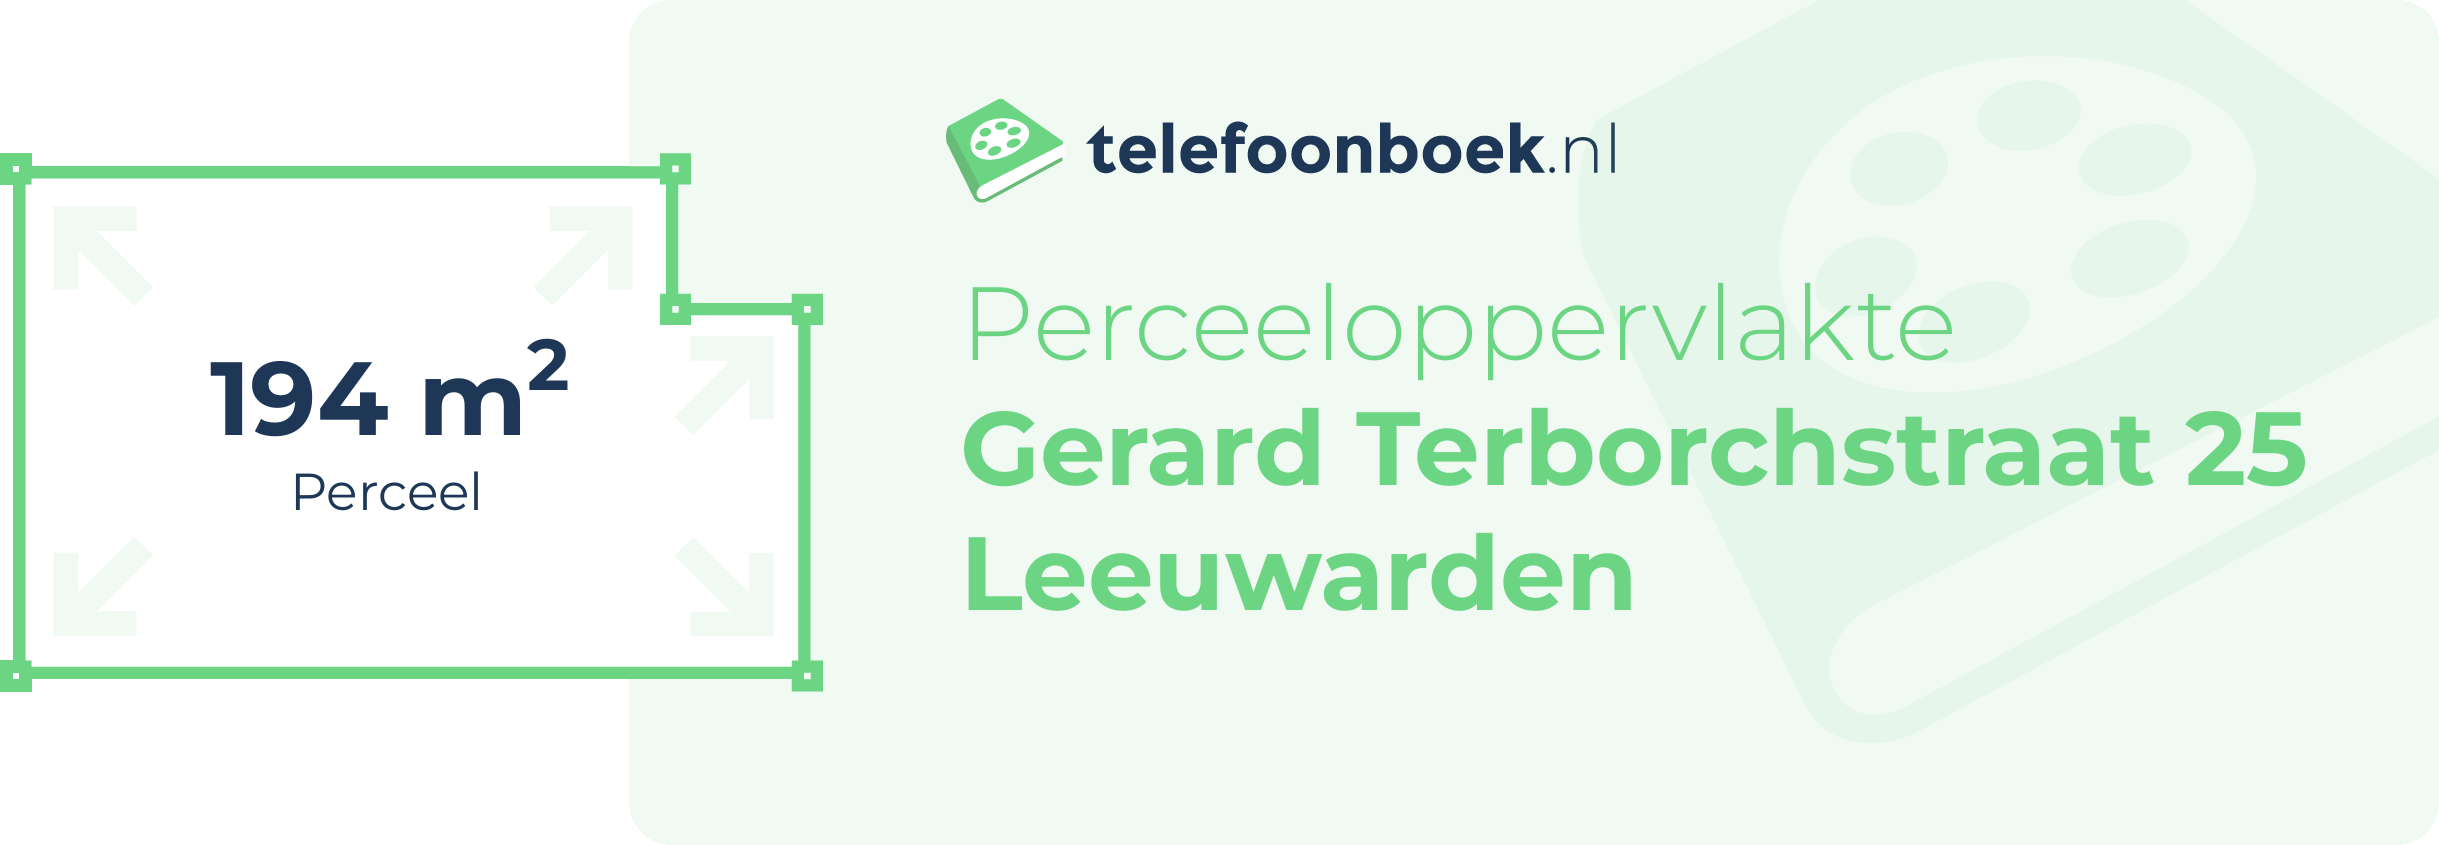 Perceeloppervlakte Gerard Terborchstraat 25 Leeuwarden